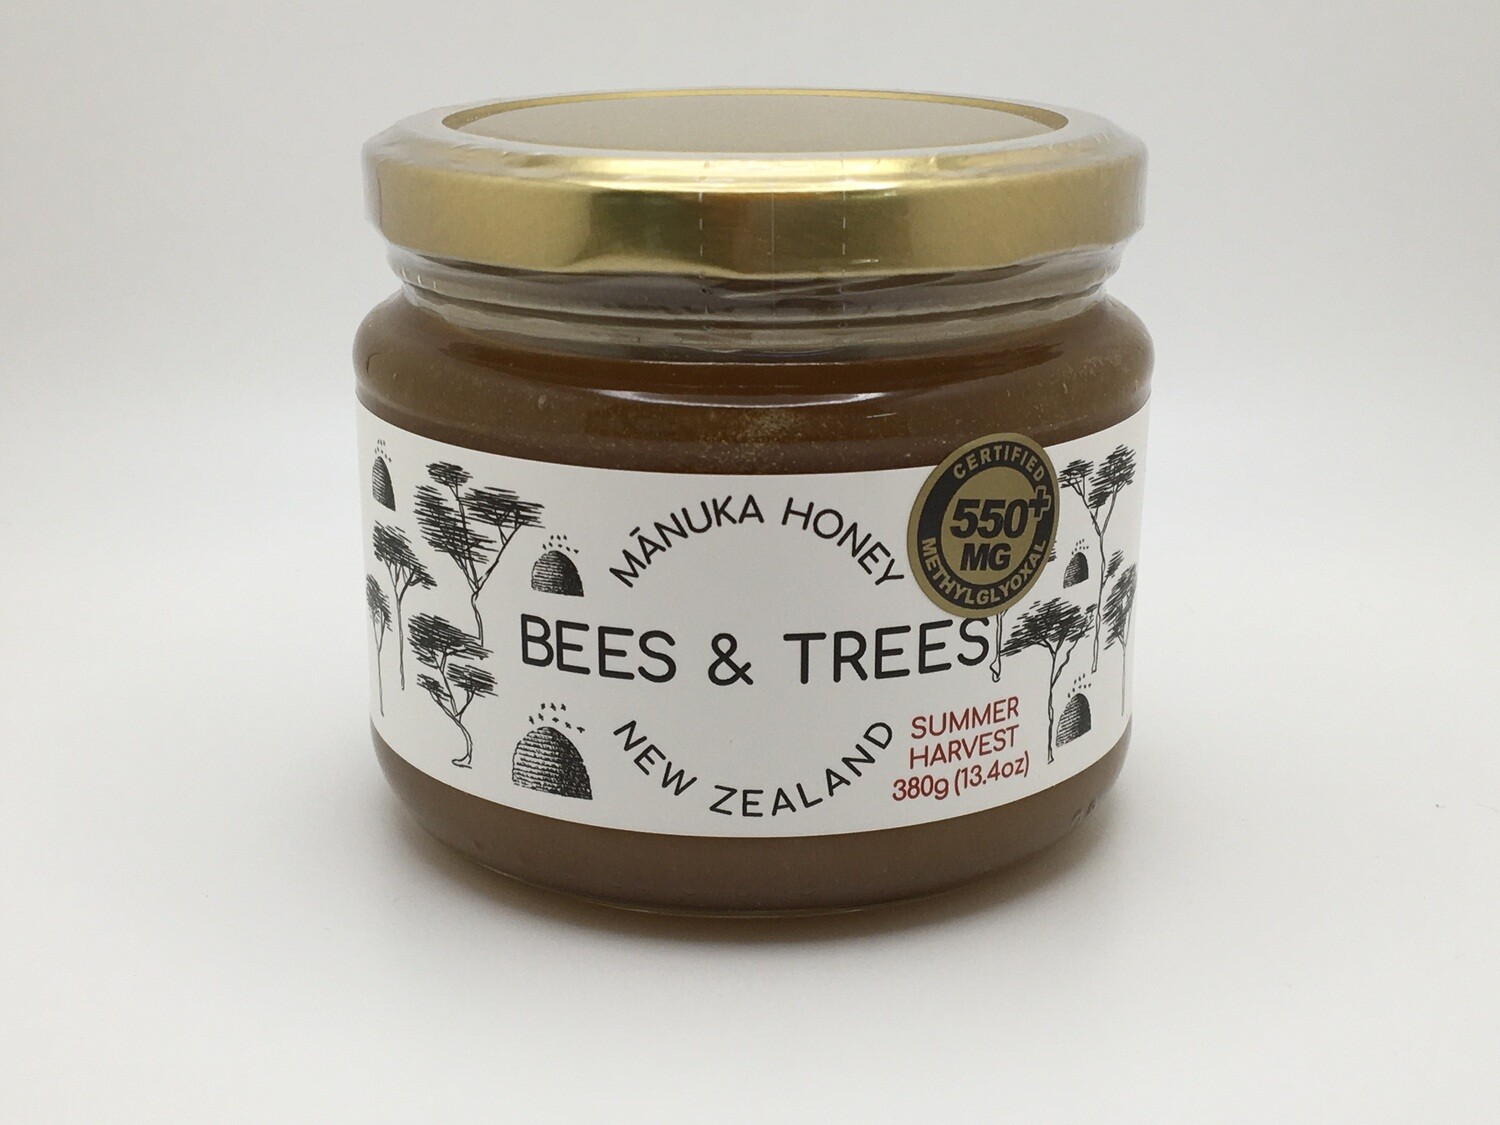 Manuka Honey 550mg 13.4oz (Bees & Trees)